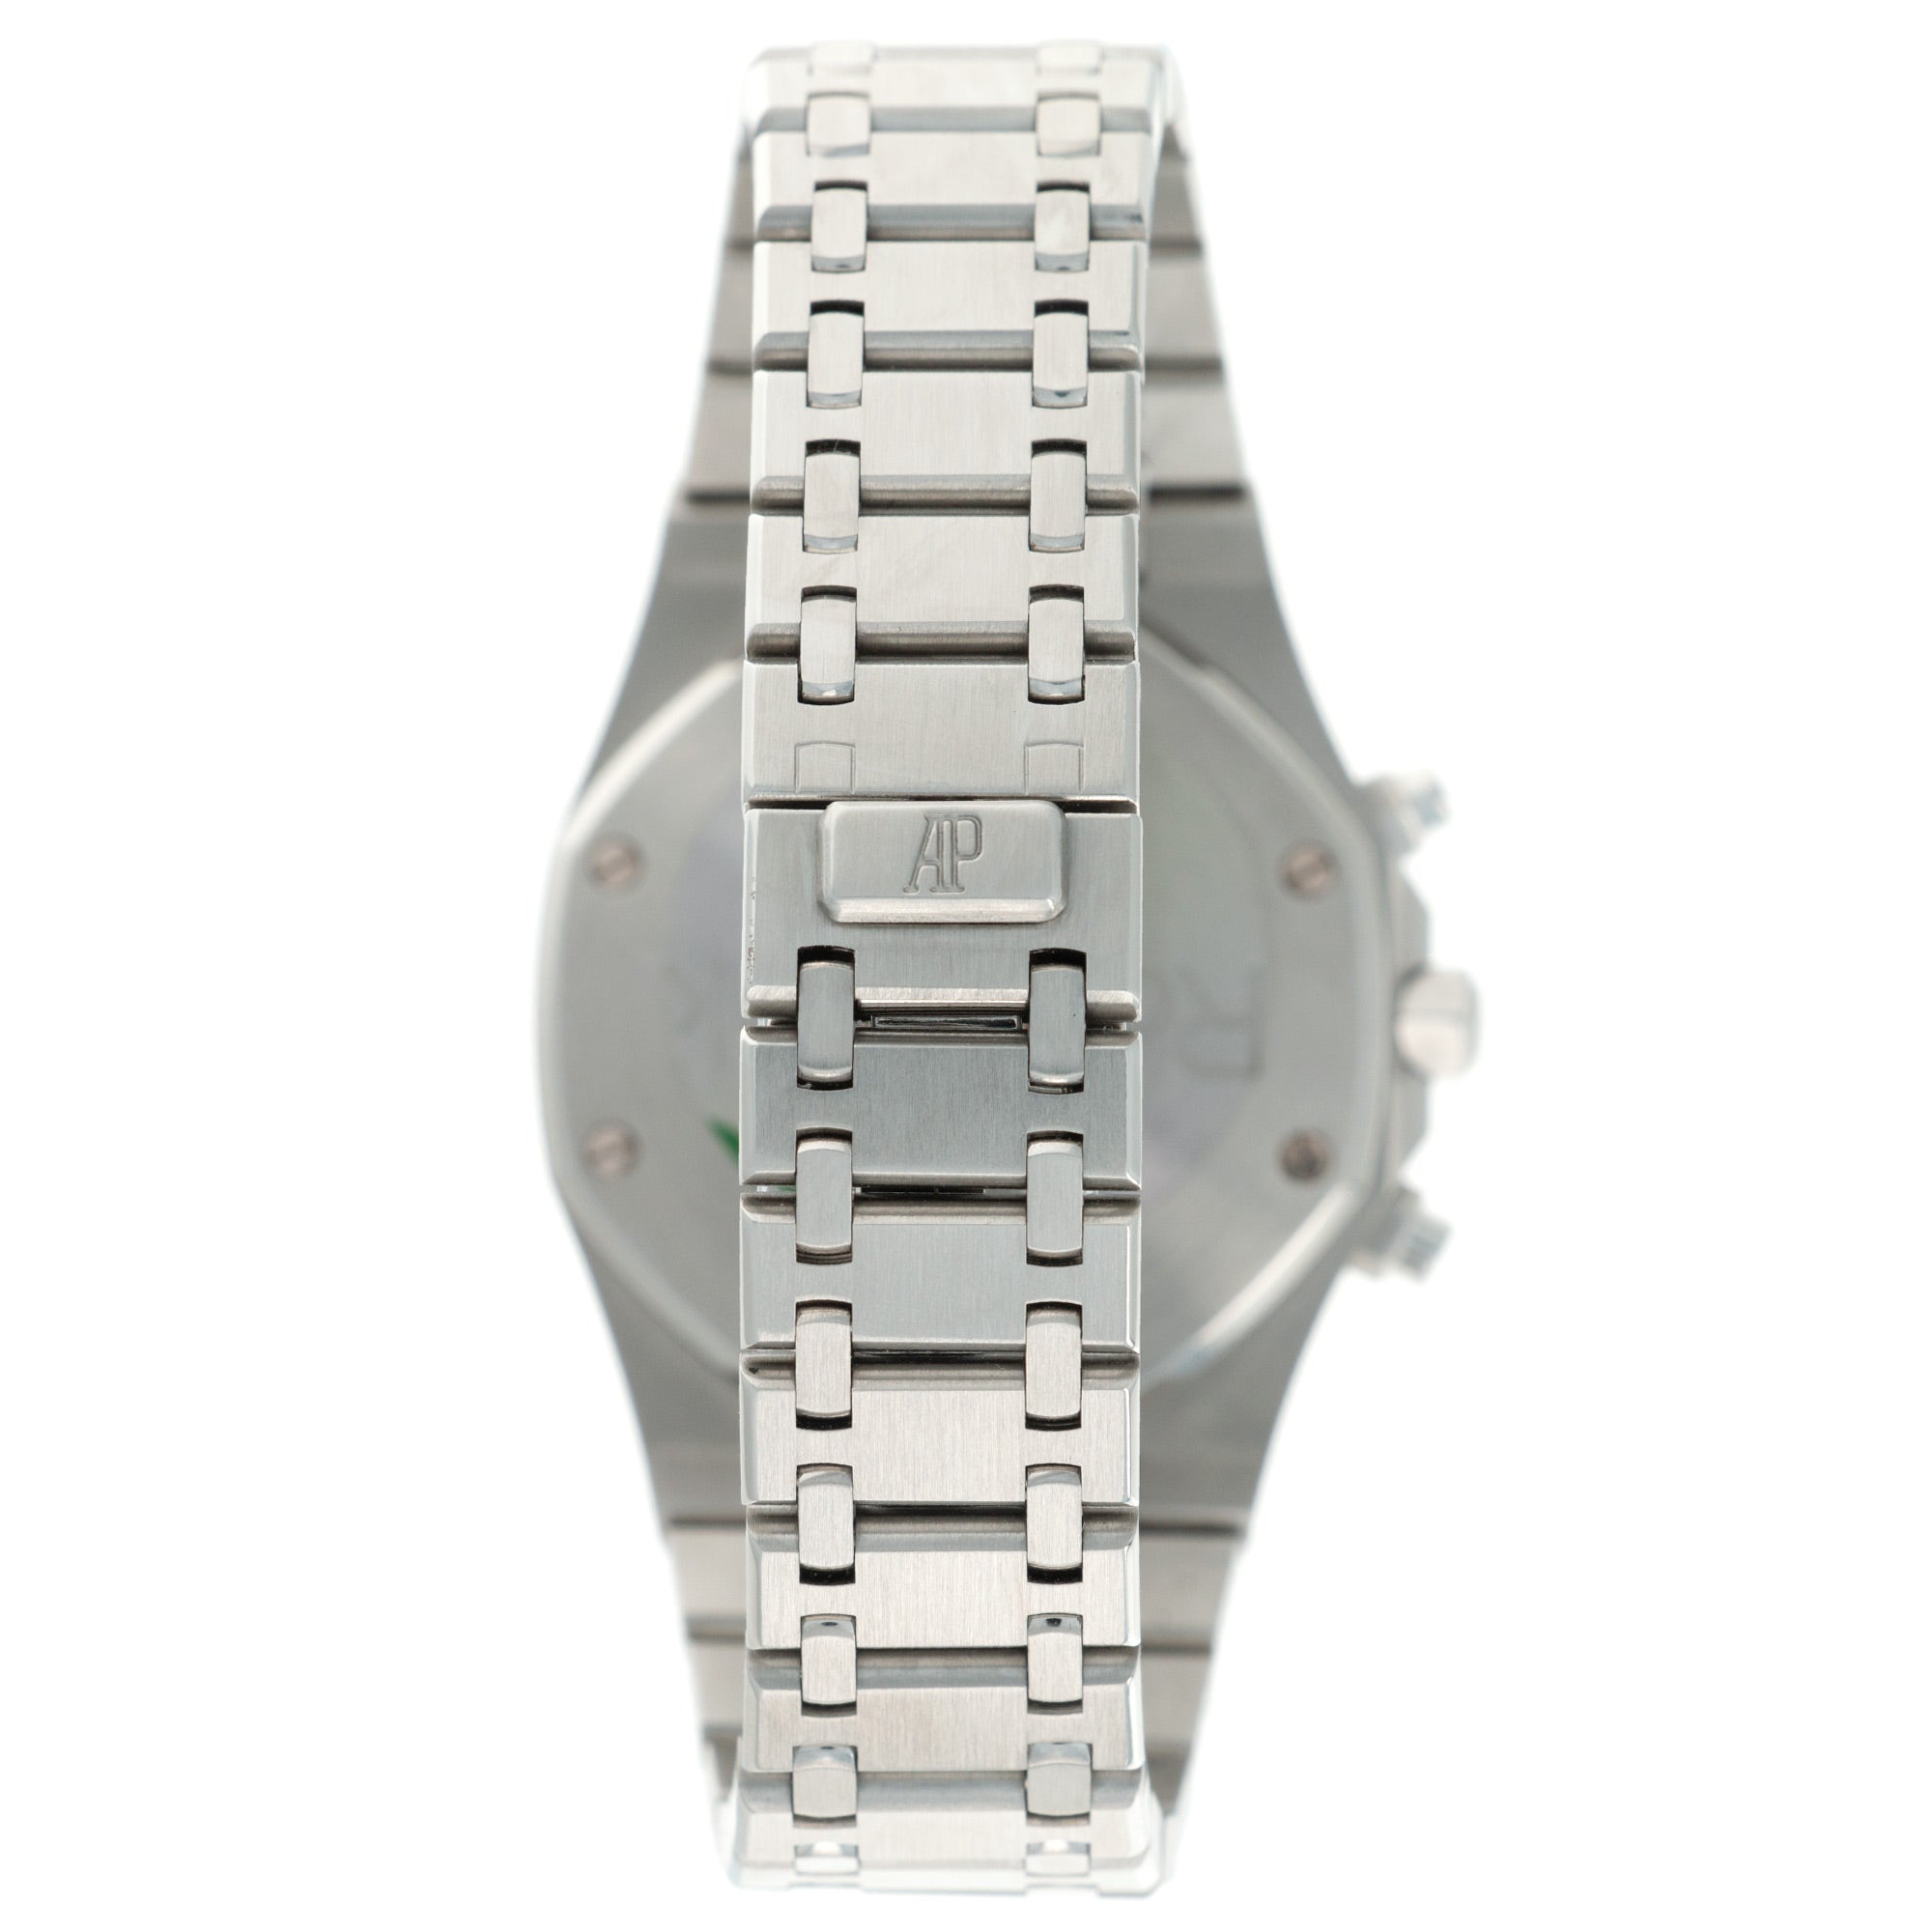 Audemars Piguet - Audemars Piguet Steel Royal Oak Chronograph Ref. 26300 - The Keystone Watches